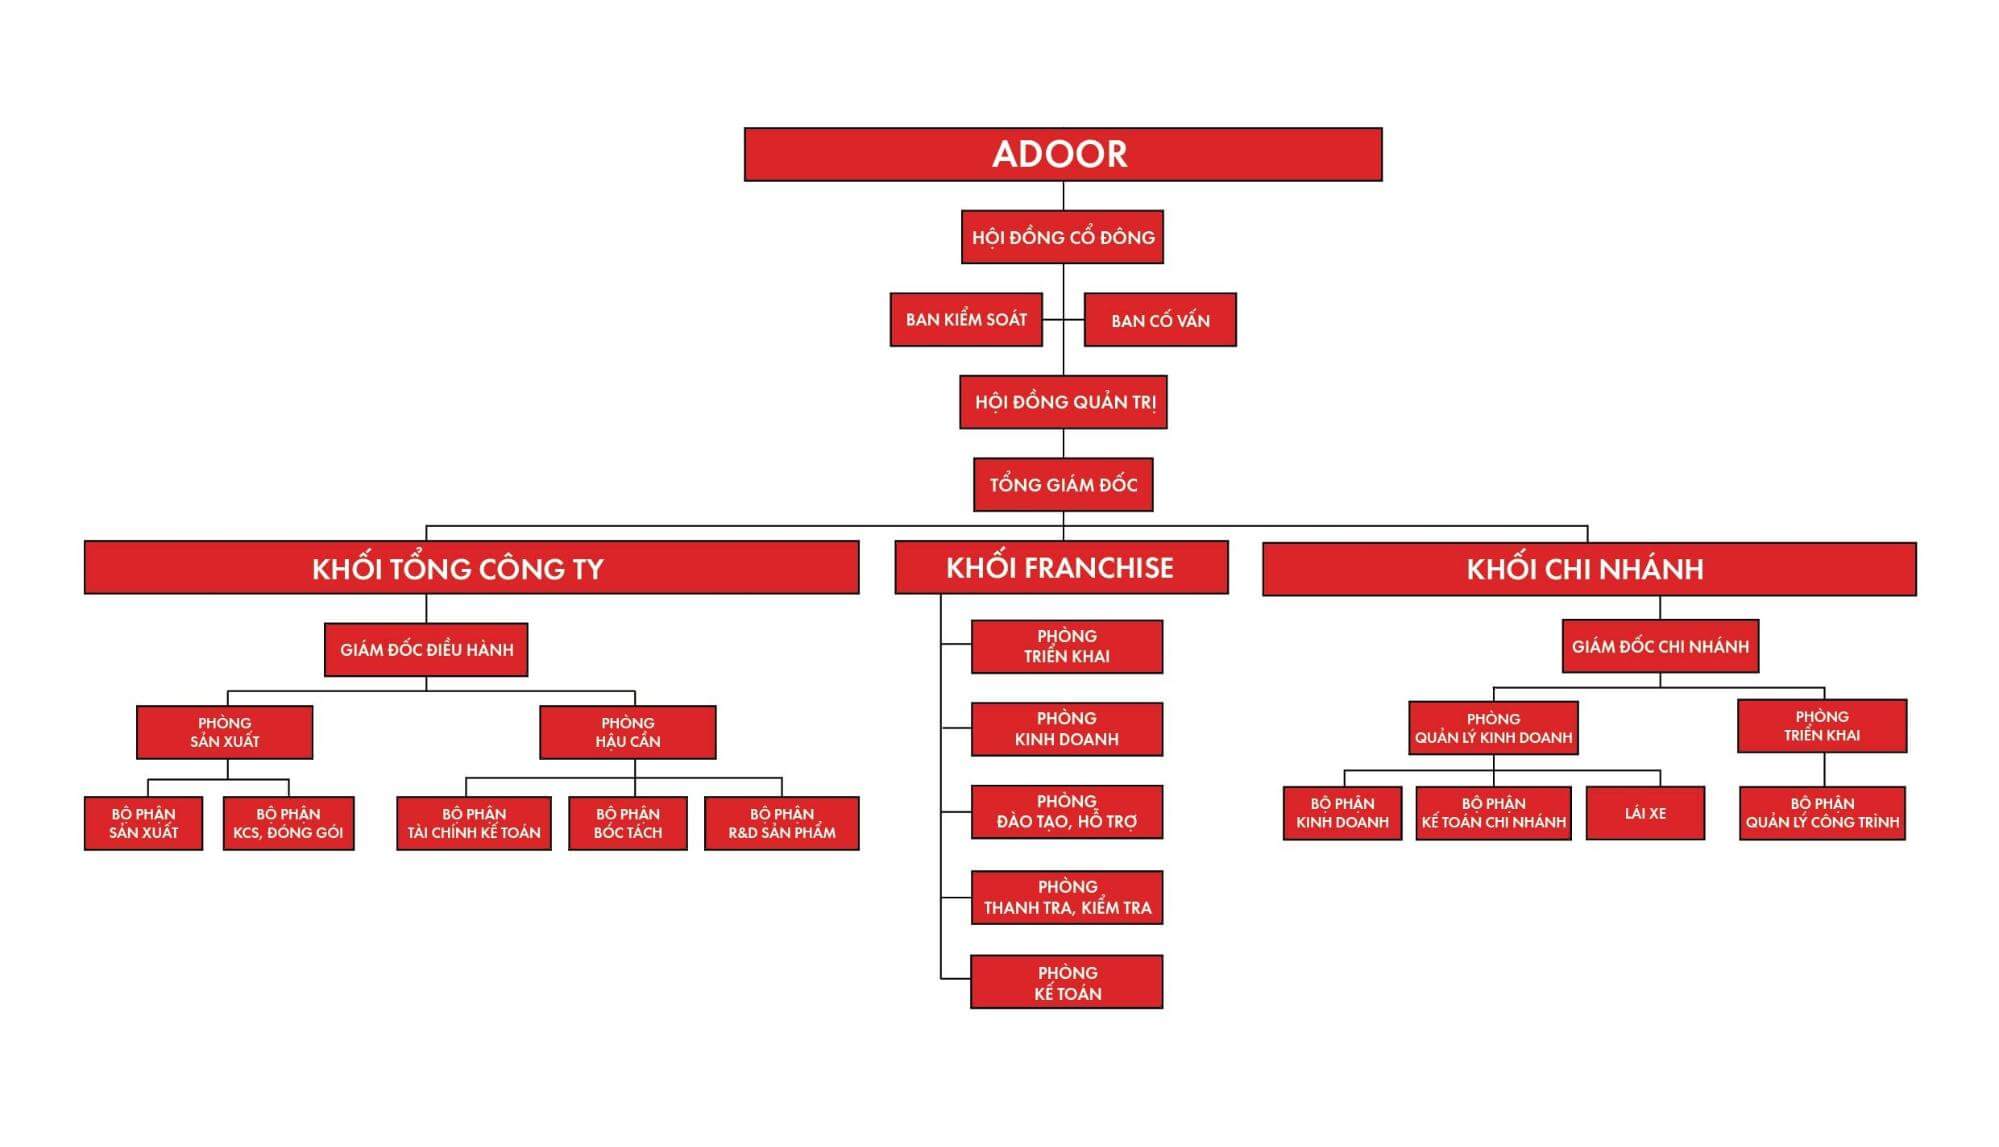 Cơ cấu tổ chức của Adoor rõ ràng và thống nhất